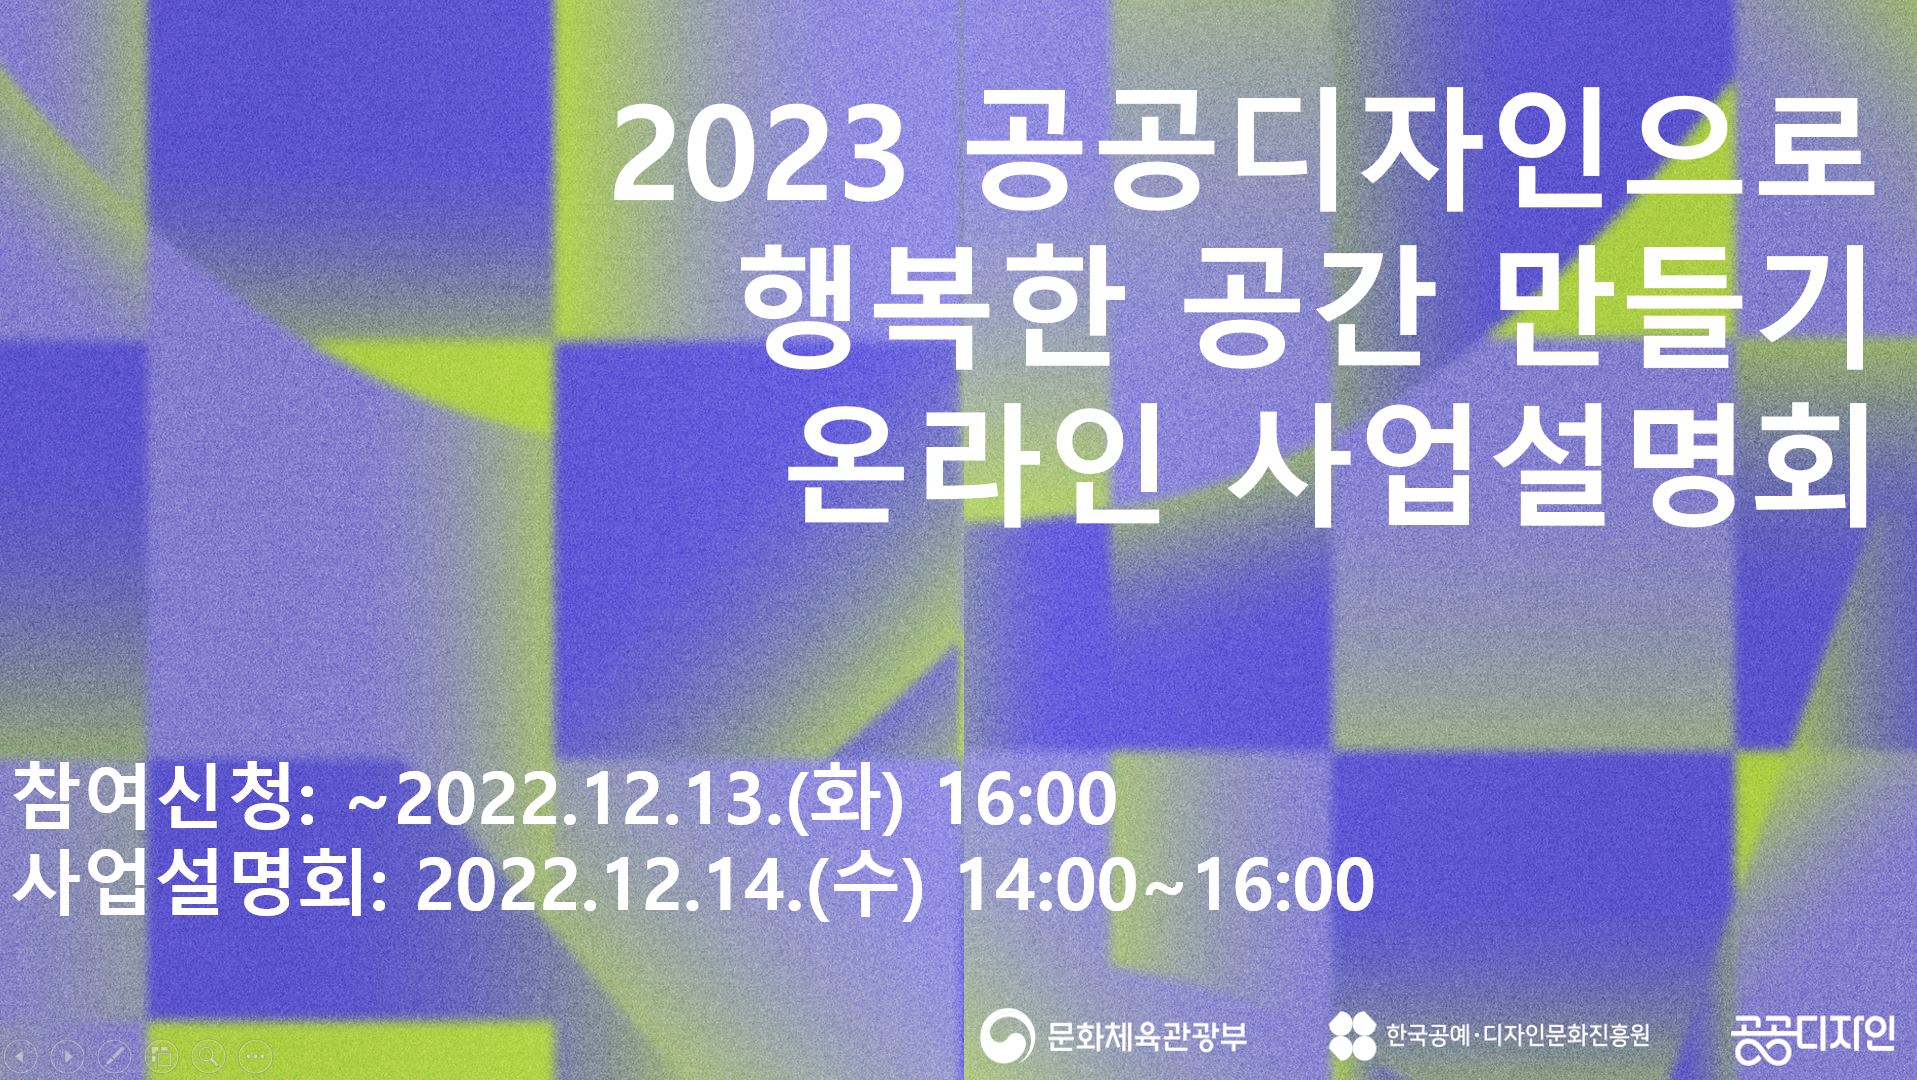  2023 공공디자인으로 행복한 공간 만들기 온라인 사업 설명회 참여신청 : ~2022. 12. 13.(화) 16:00 사업설명회 : 2022. 12. 14.(수) 14:00 ~ 16:00 